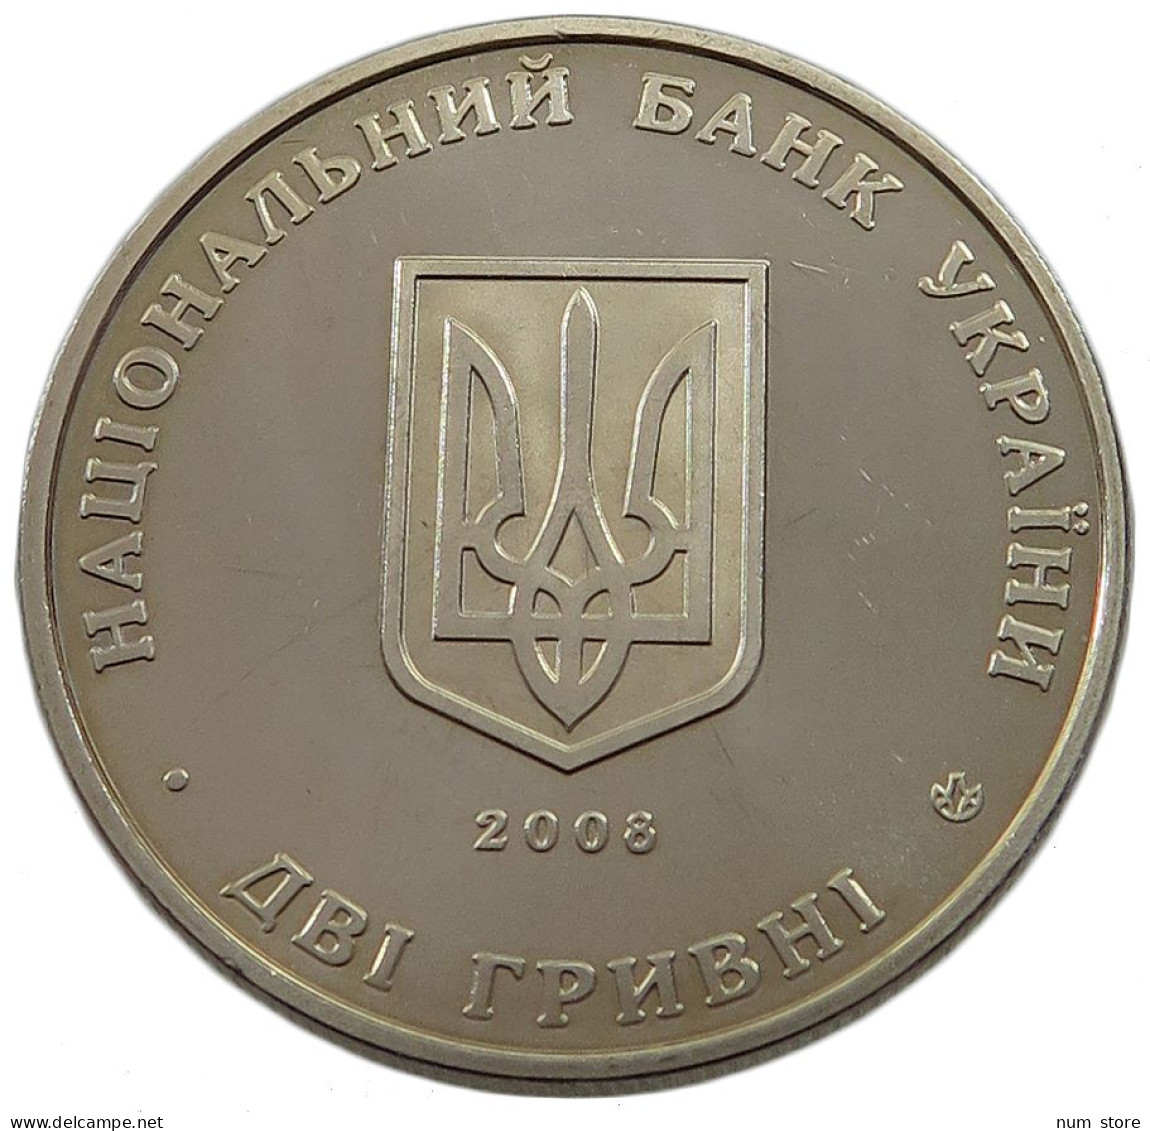 UKRAINE 2 HRYVNI 2008  #w033 0435 - Ukraine